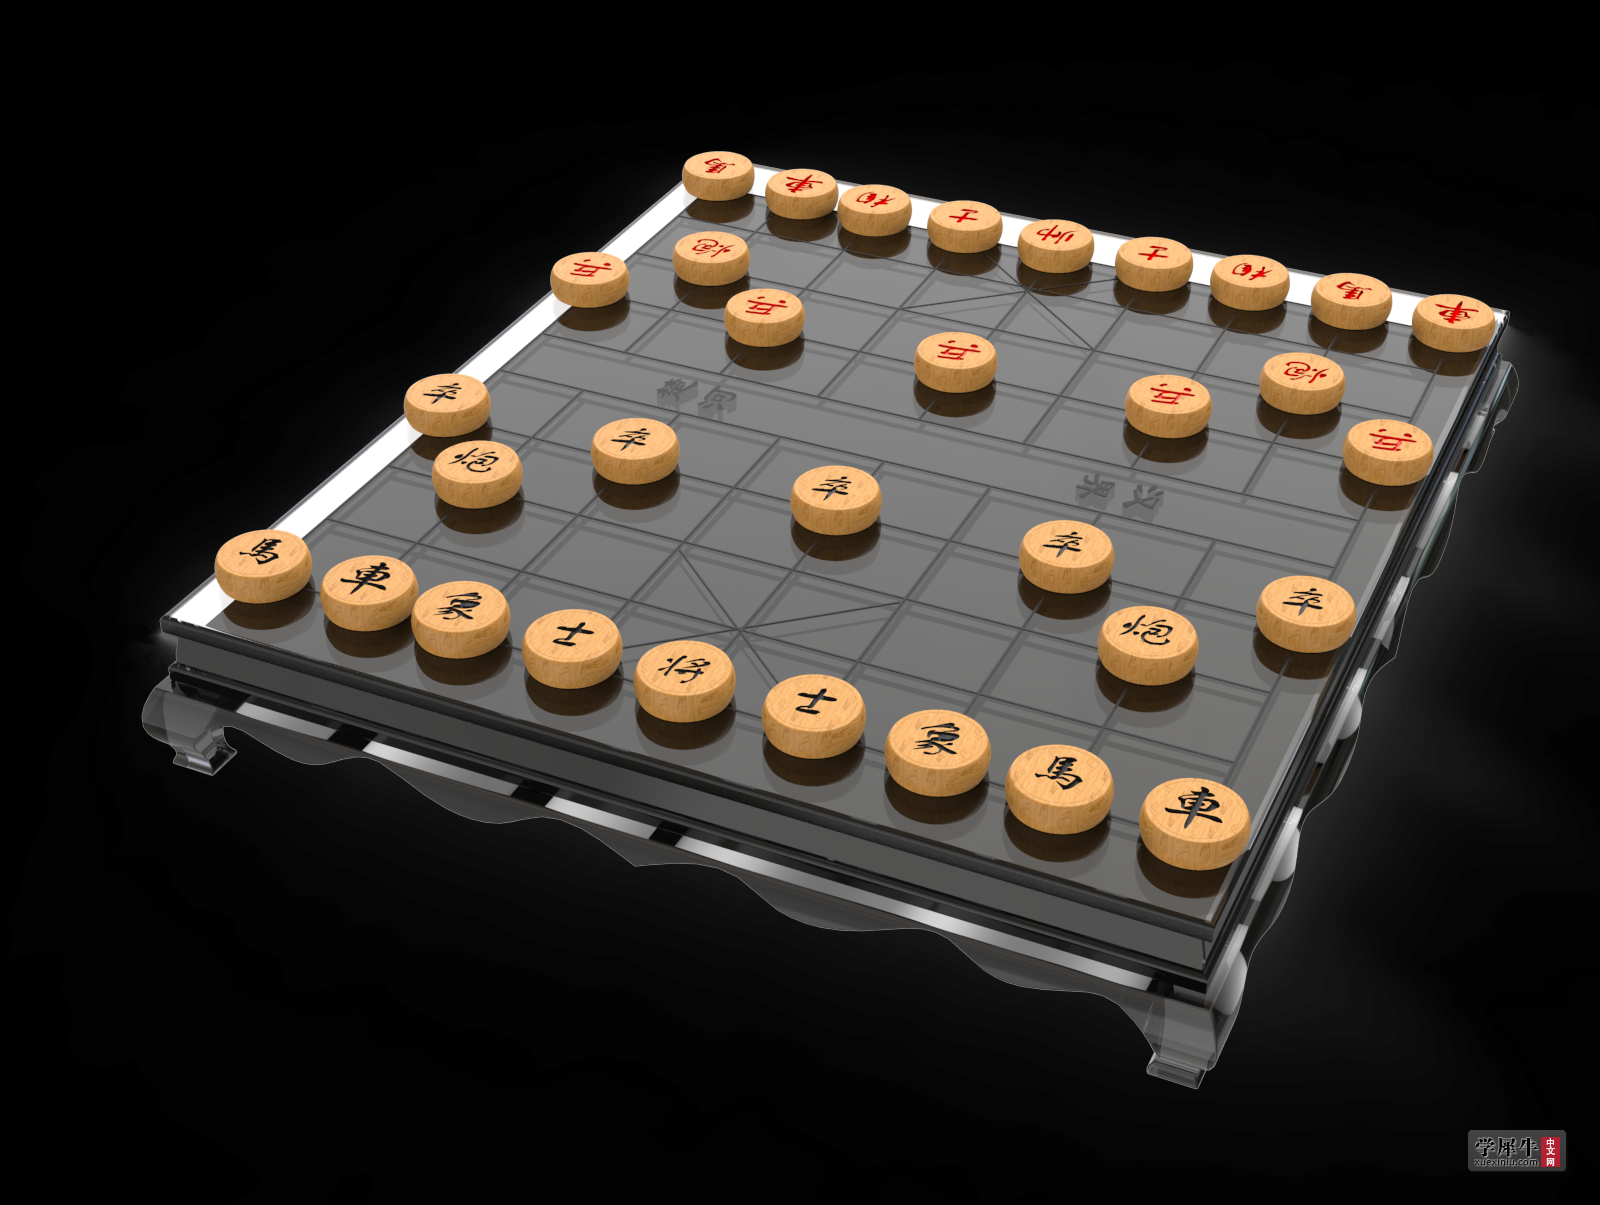 象棋棋盘犀牛模型.543.png